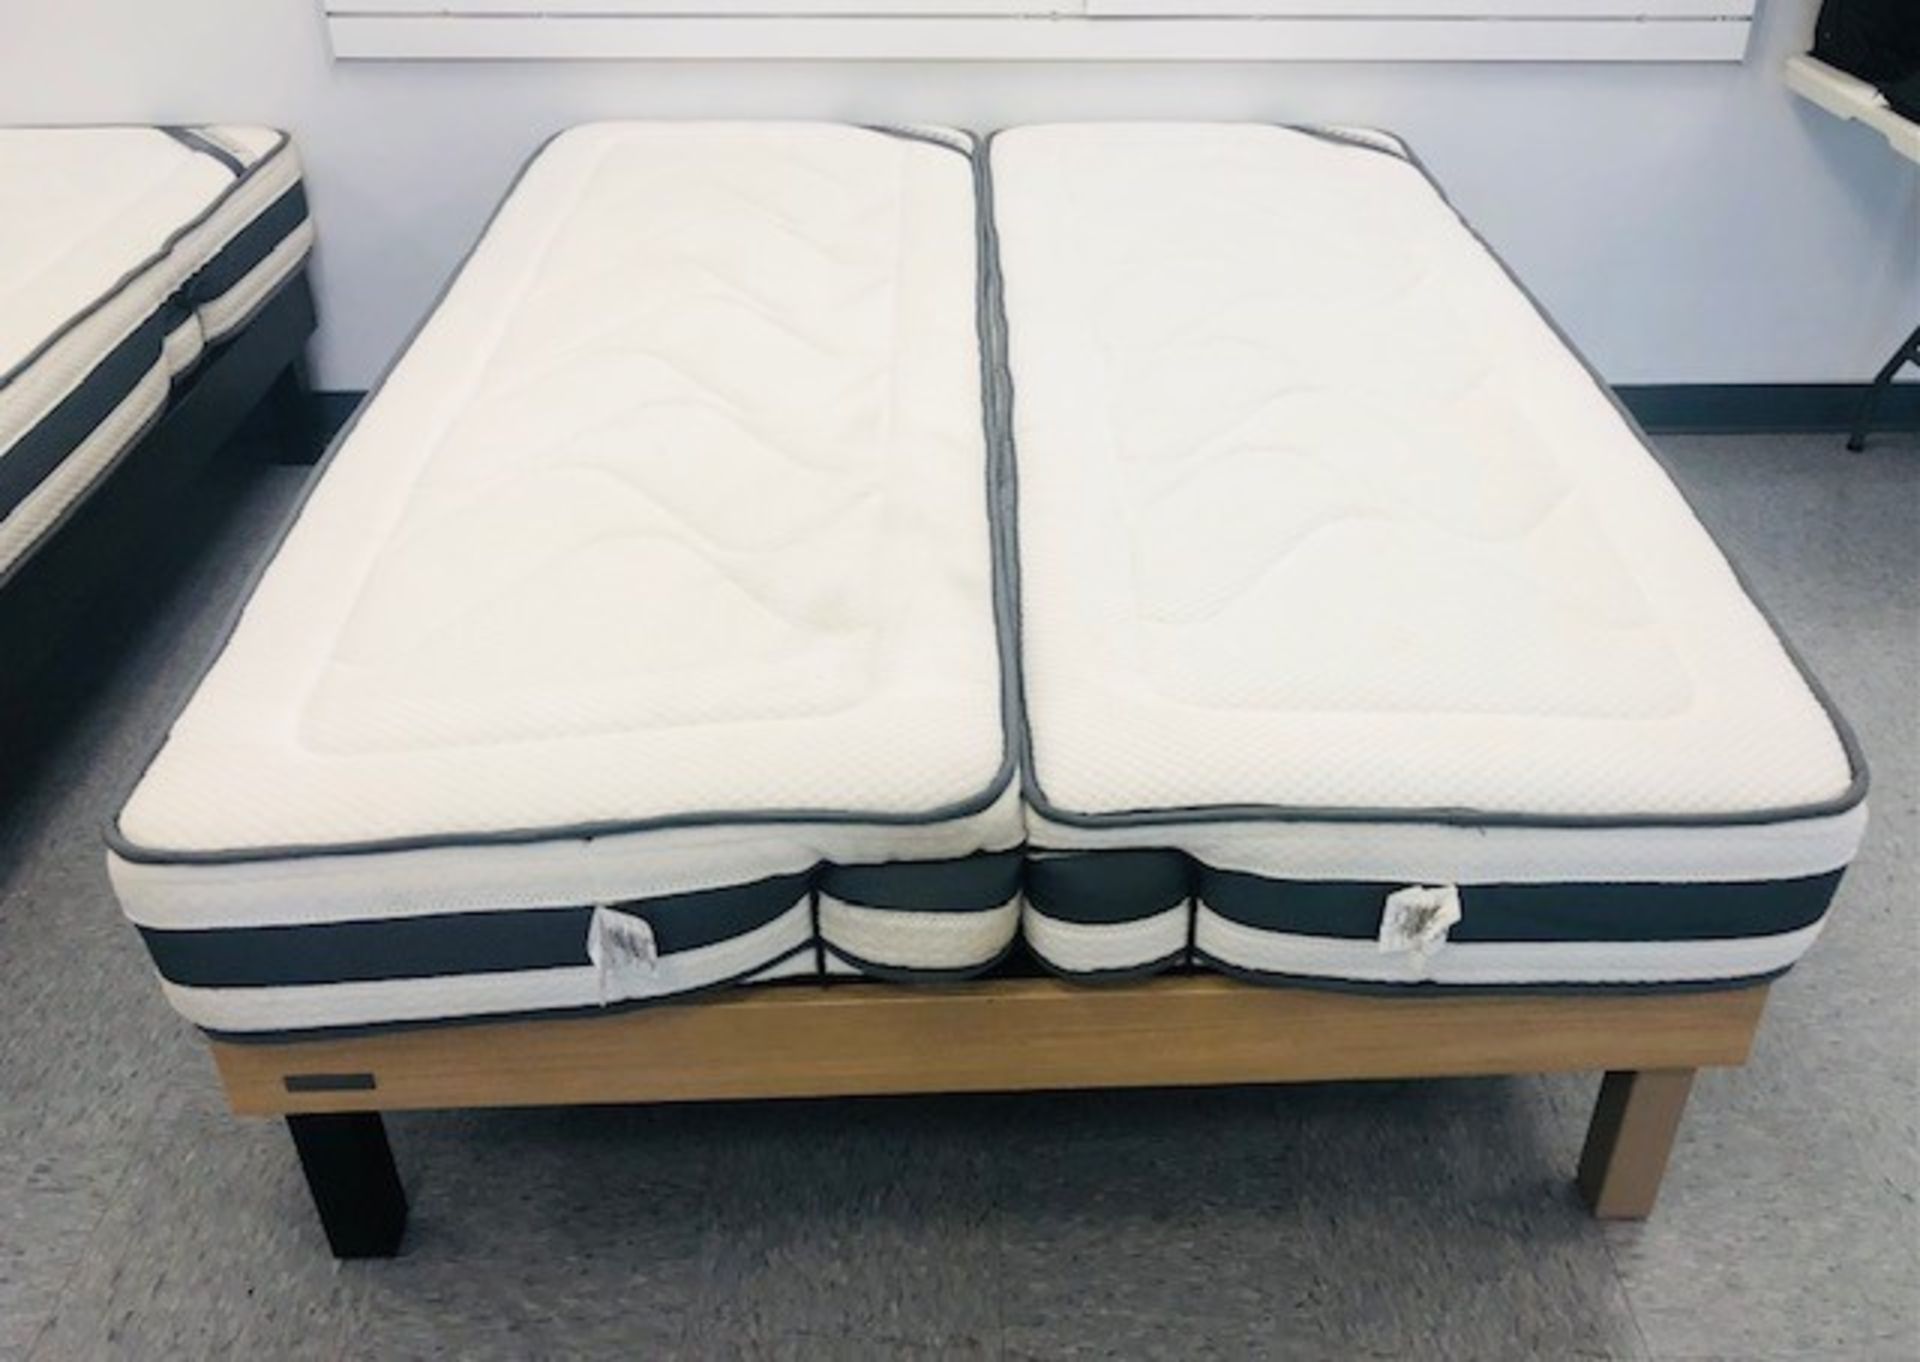 NATURE & PUR adjustable electric bed mod. COMFORT LUXURY V.2 size DOUBLE 53" x 75" Lit électrique aj - Image 5 of 5